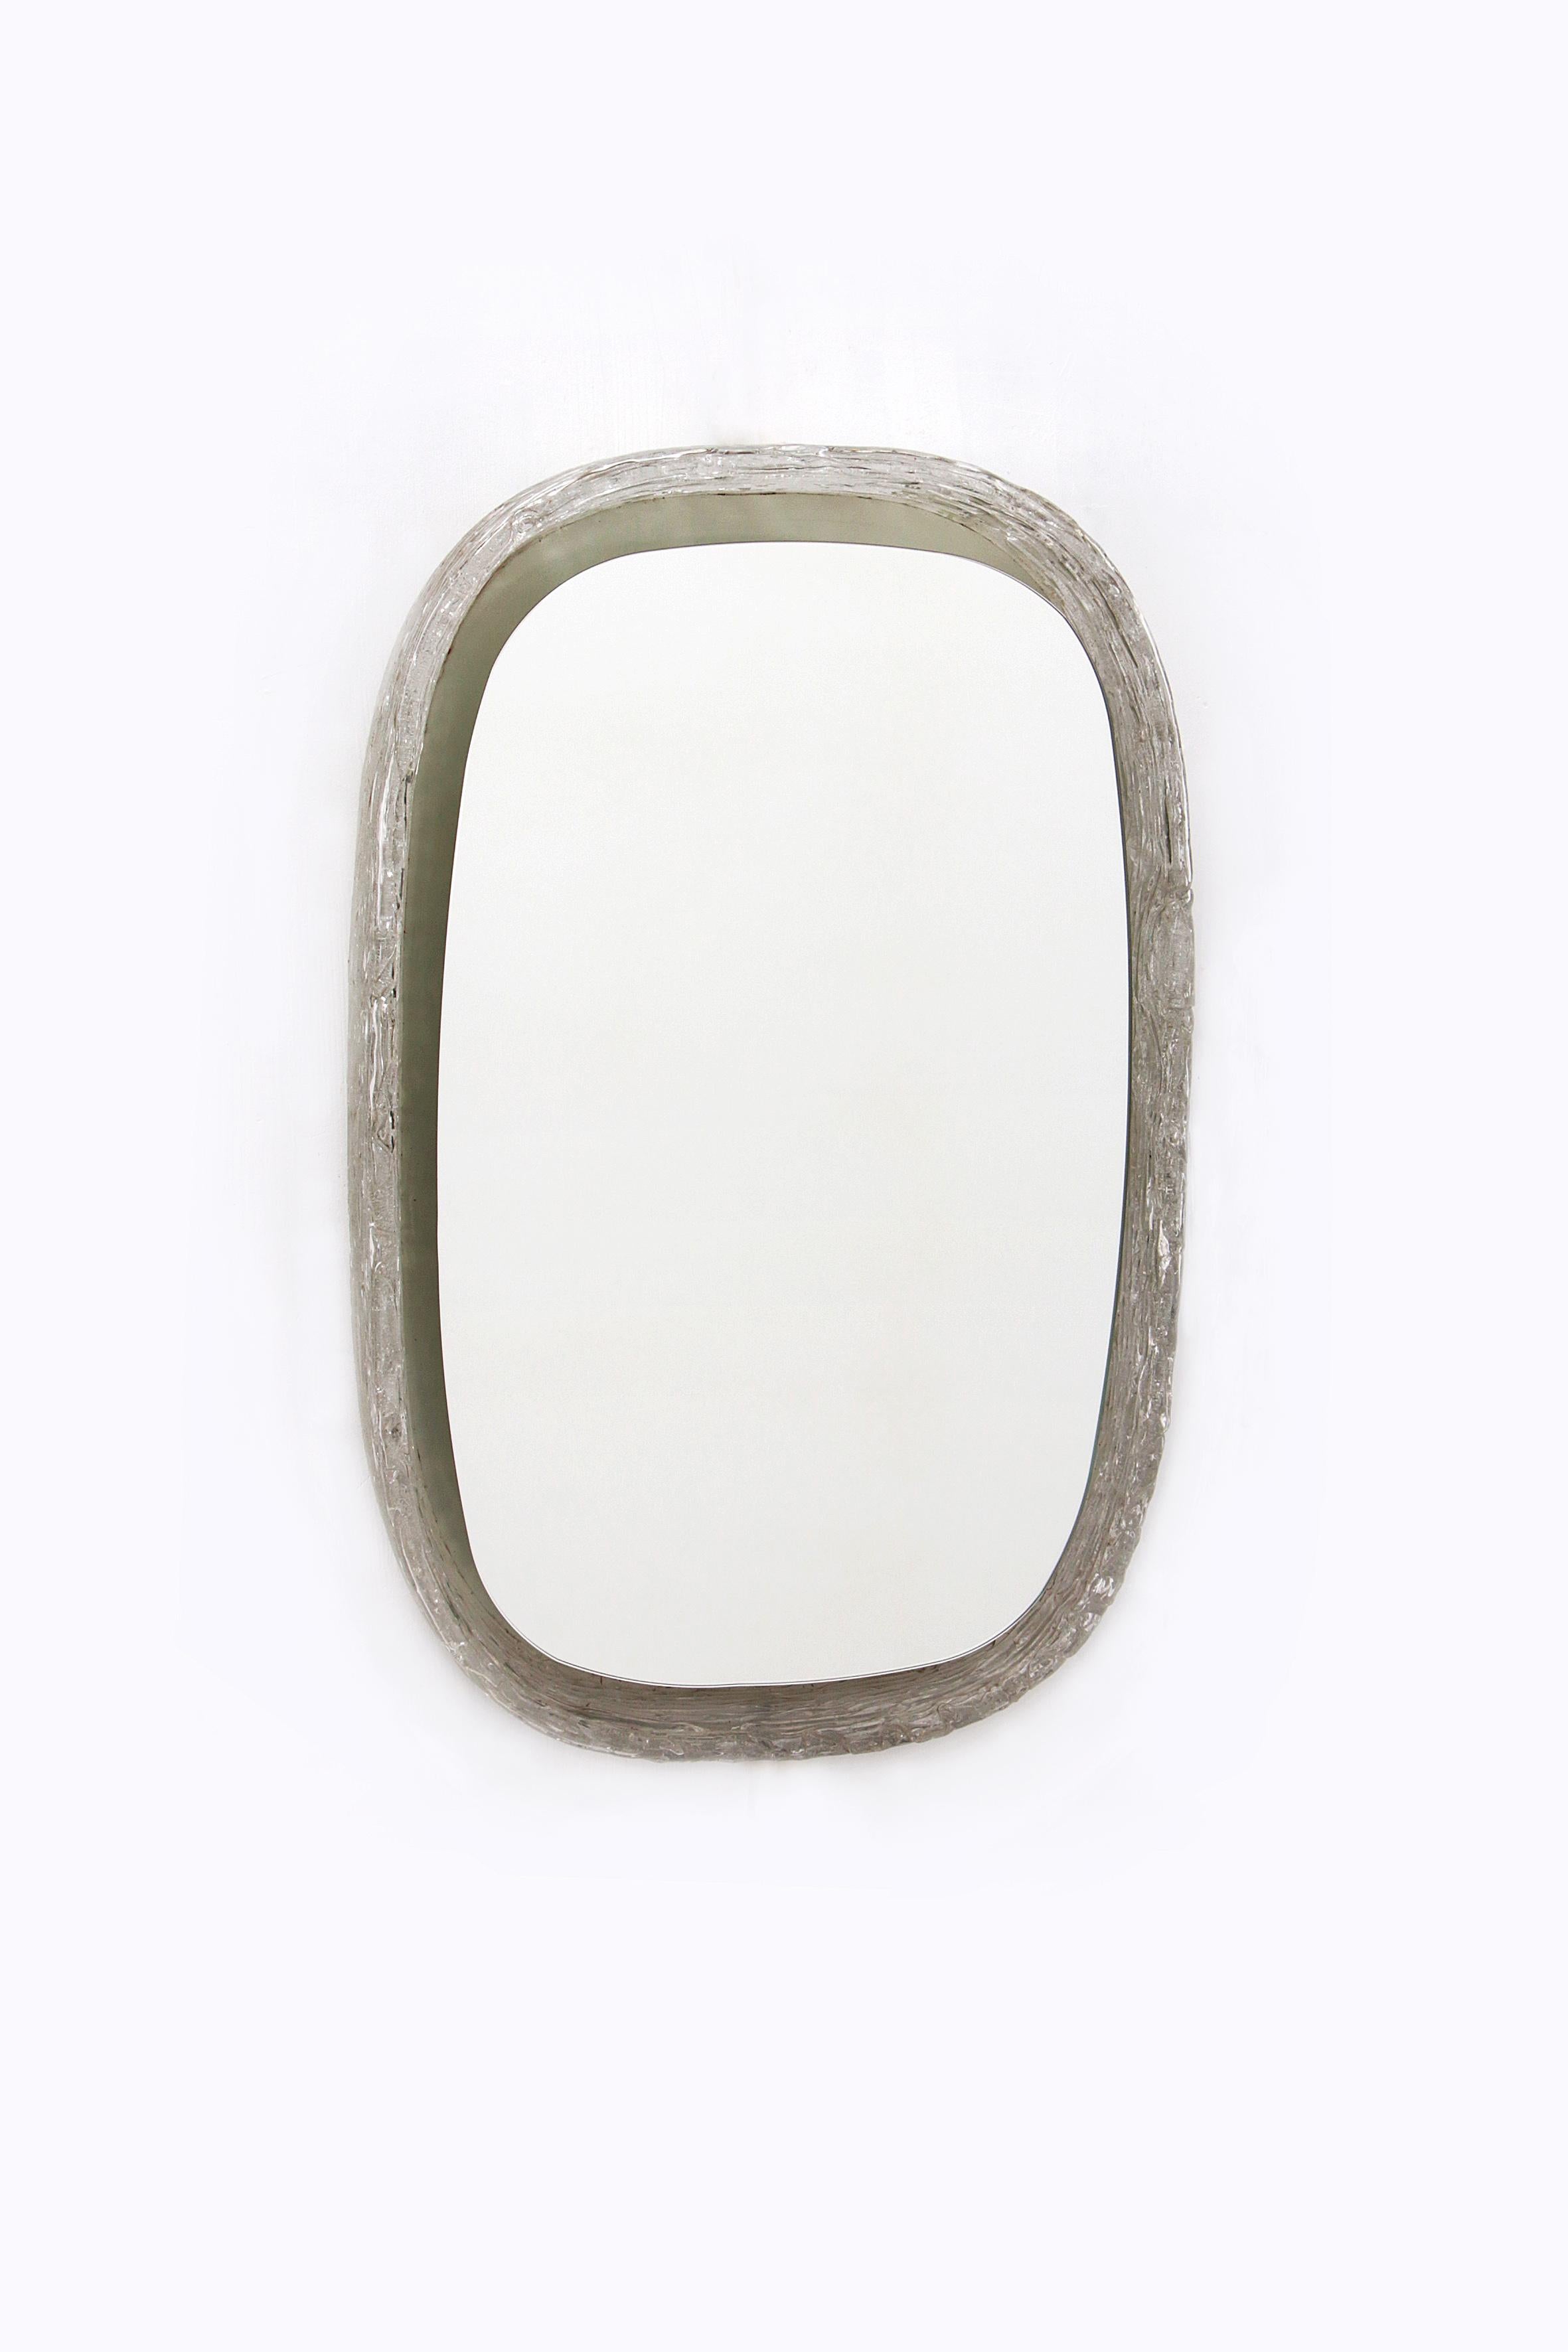 Hillebrand Vintage Ovaler beleuchteter Wandspiegel aus Plexiglas, 1960er Jahre, Deutschland

Der schöne Spiegel von Hillebrand ist aus Metall mit Plexiglas und wurde in den 1960er Jahren hergestellt.

Dies ist ein ovales Modell mit schöner